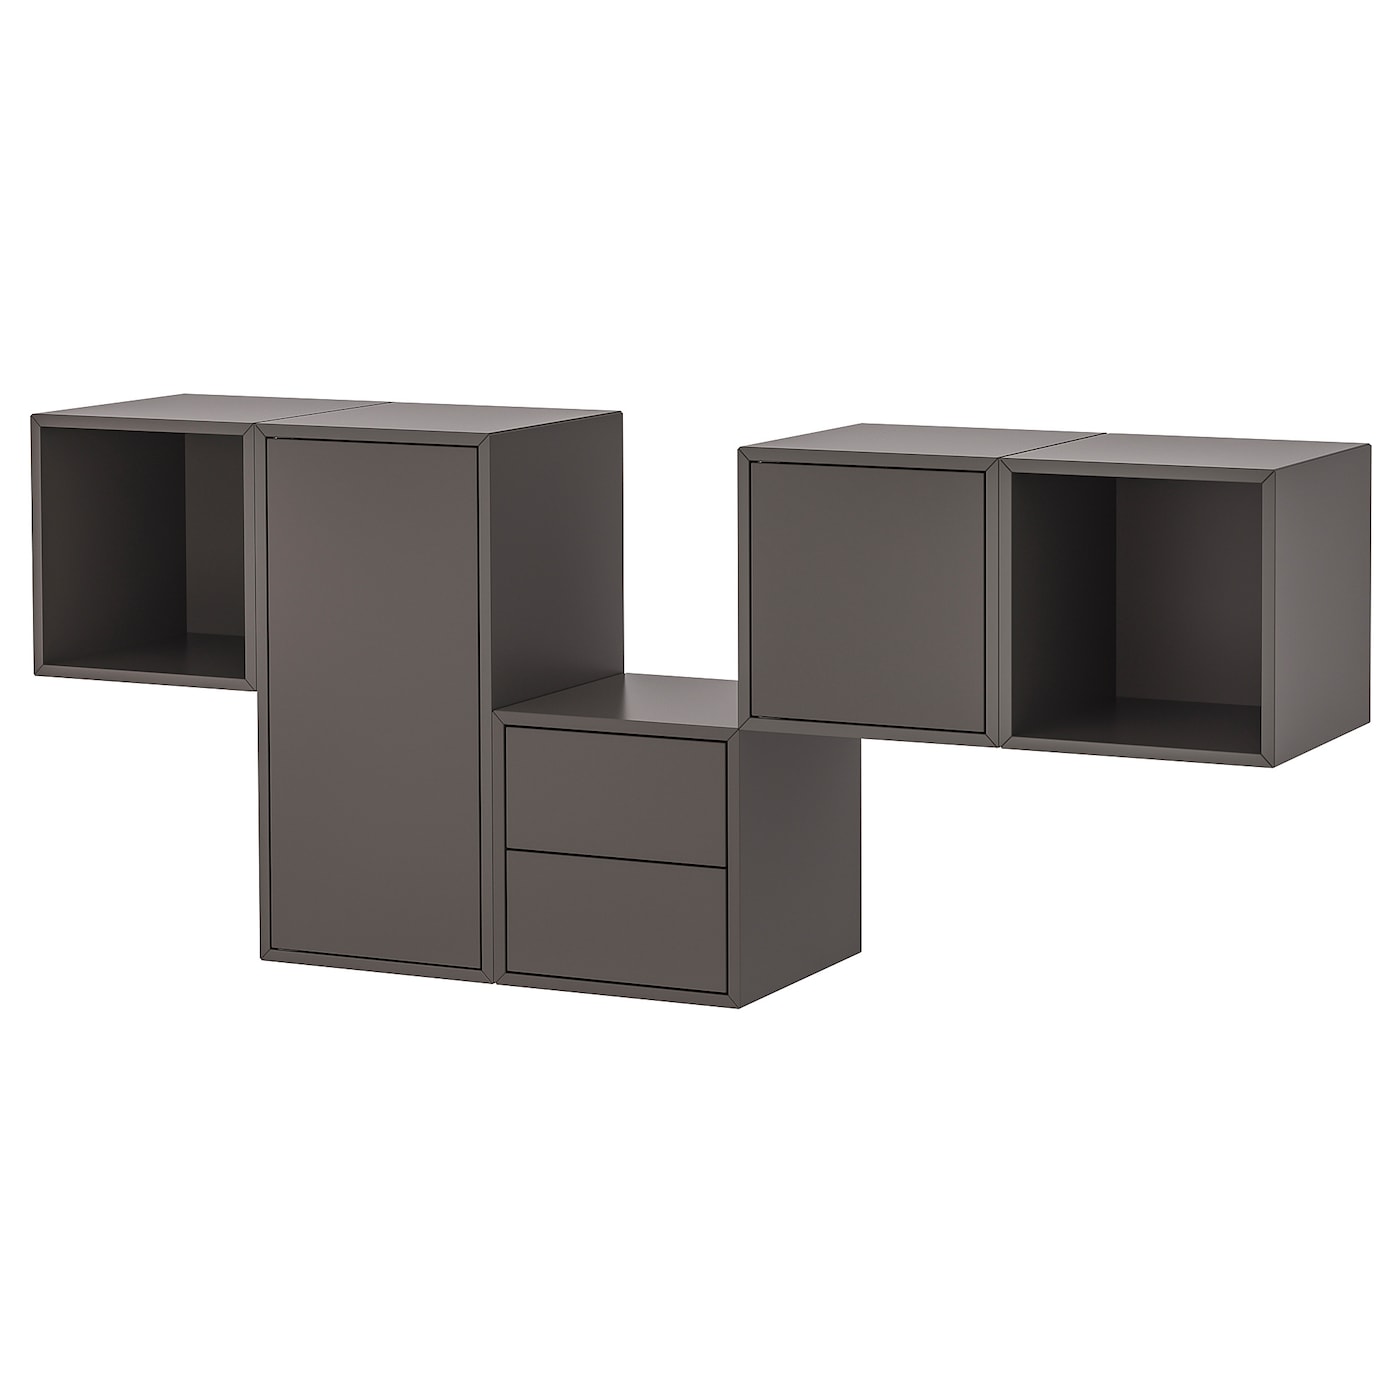 Комбинация с навесным шкафом - IKEA EKET, 175x35x70 см, темно-серый, ЭКЕТ ИКЕА